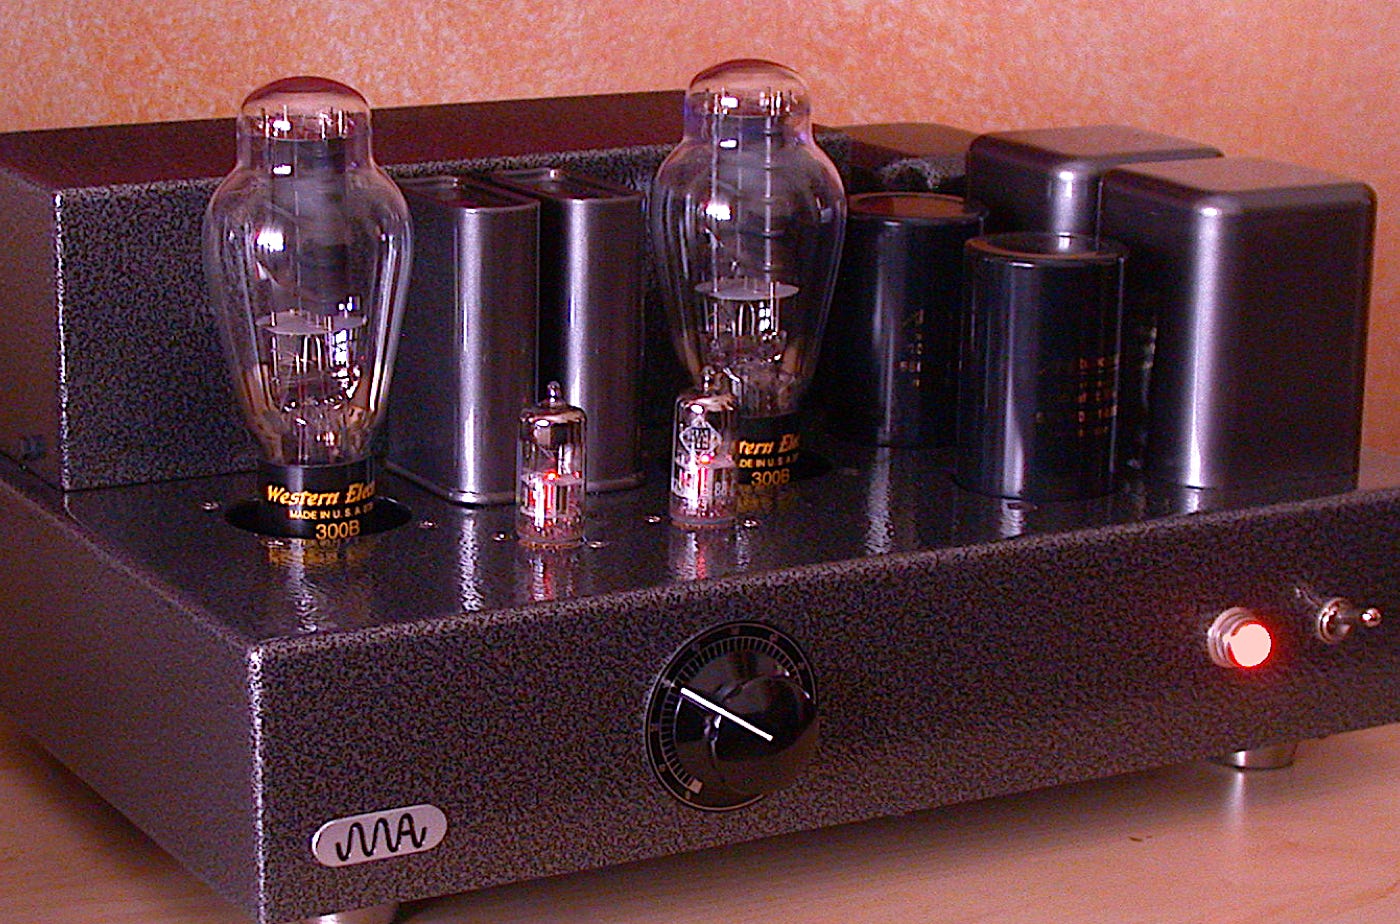 EC8010, 300B parallel feed SE amplifier.